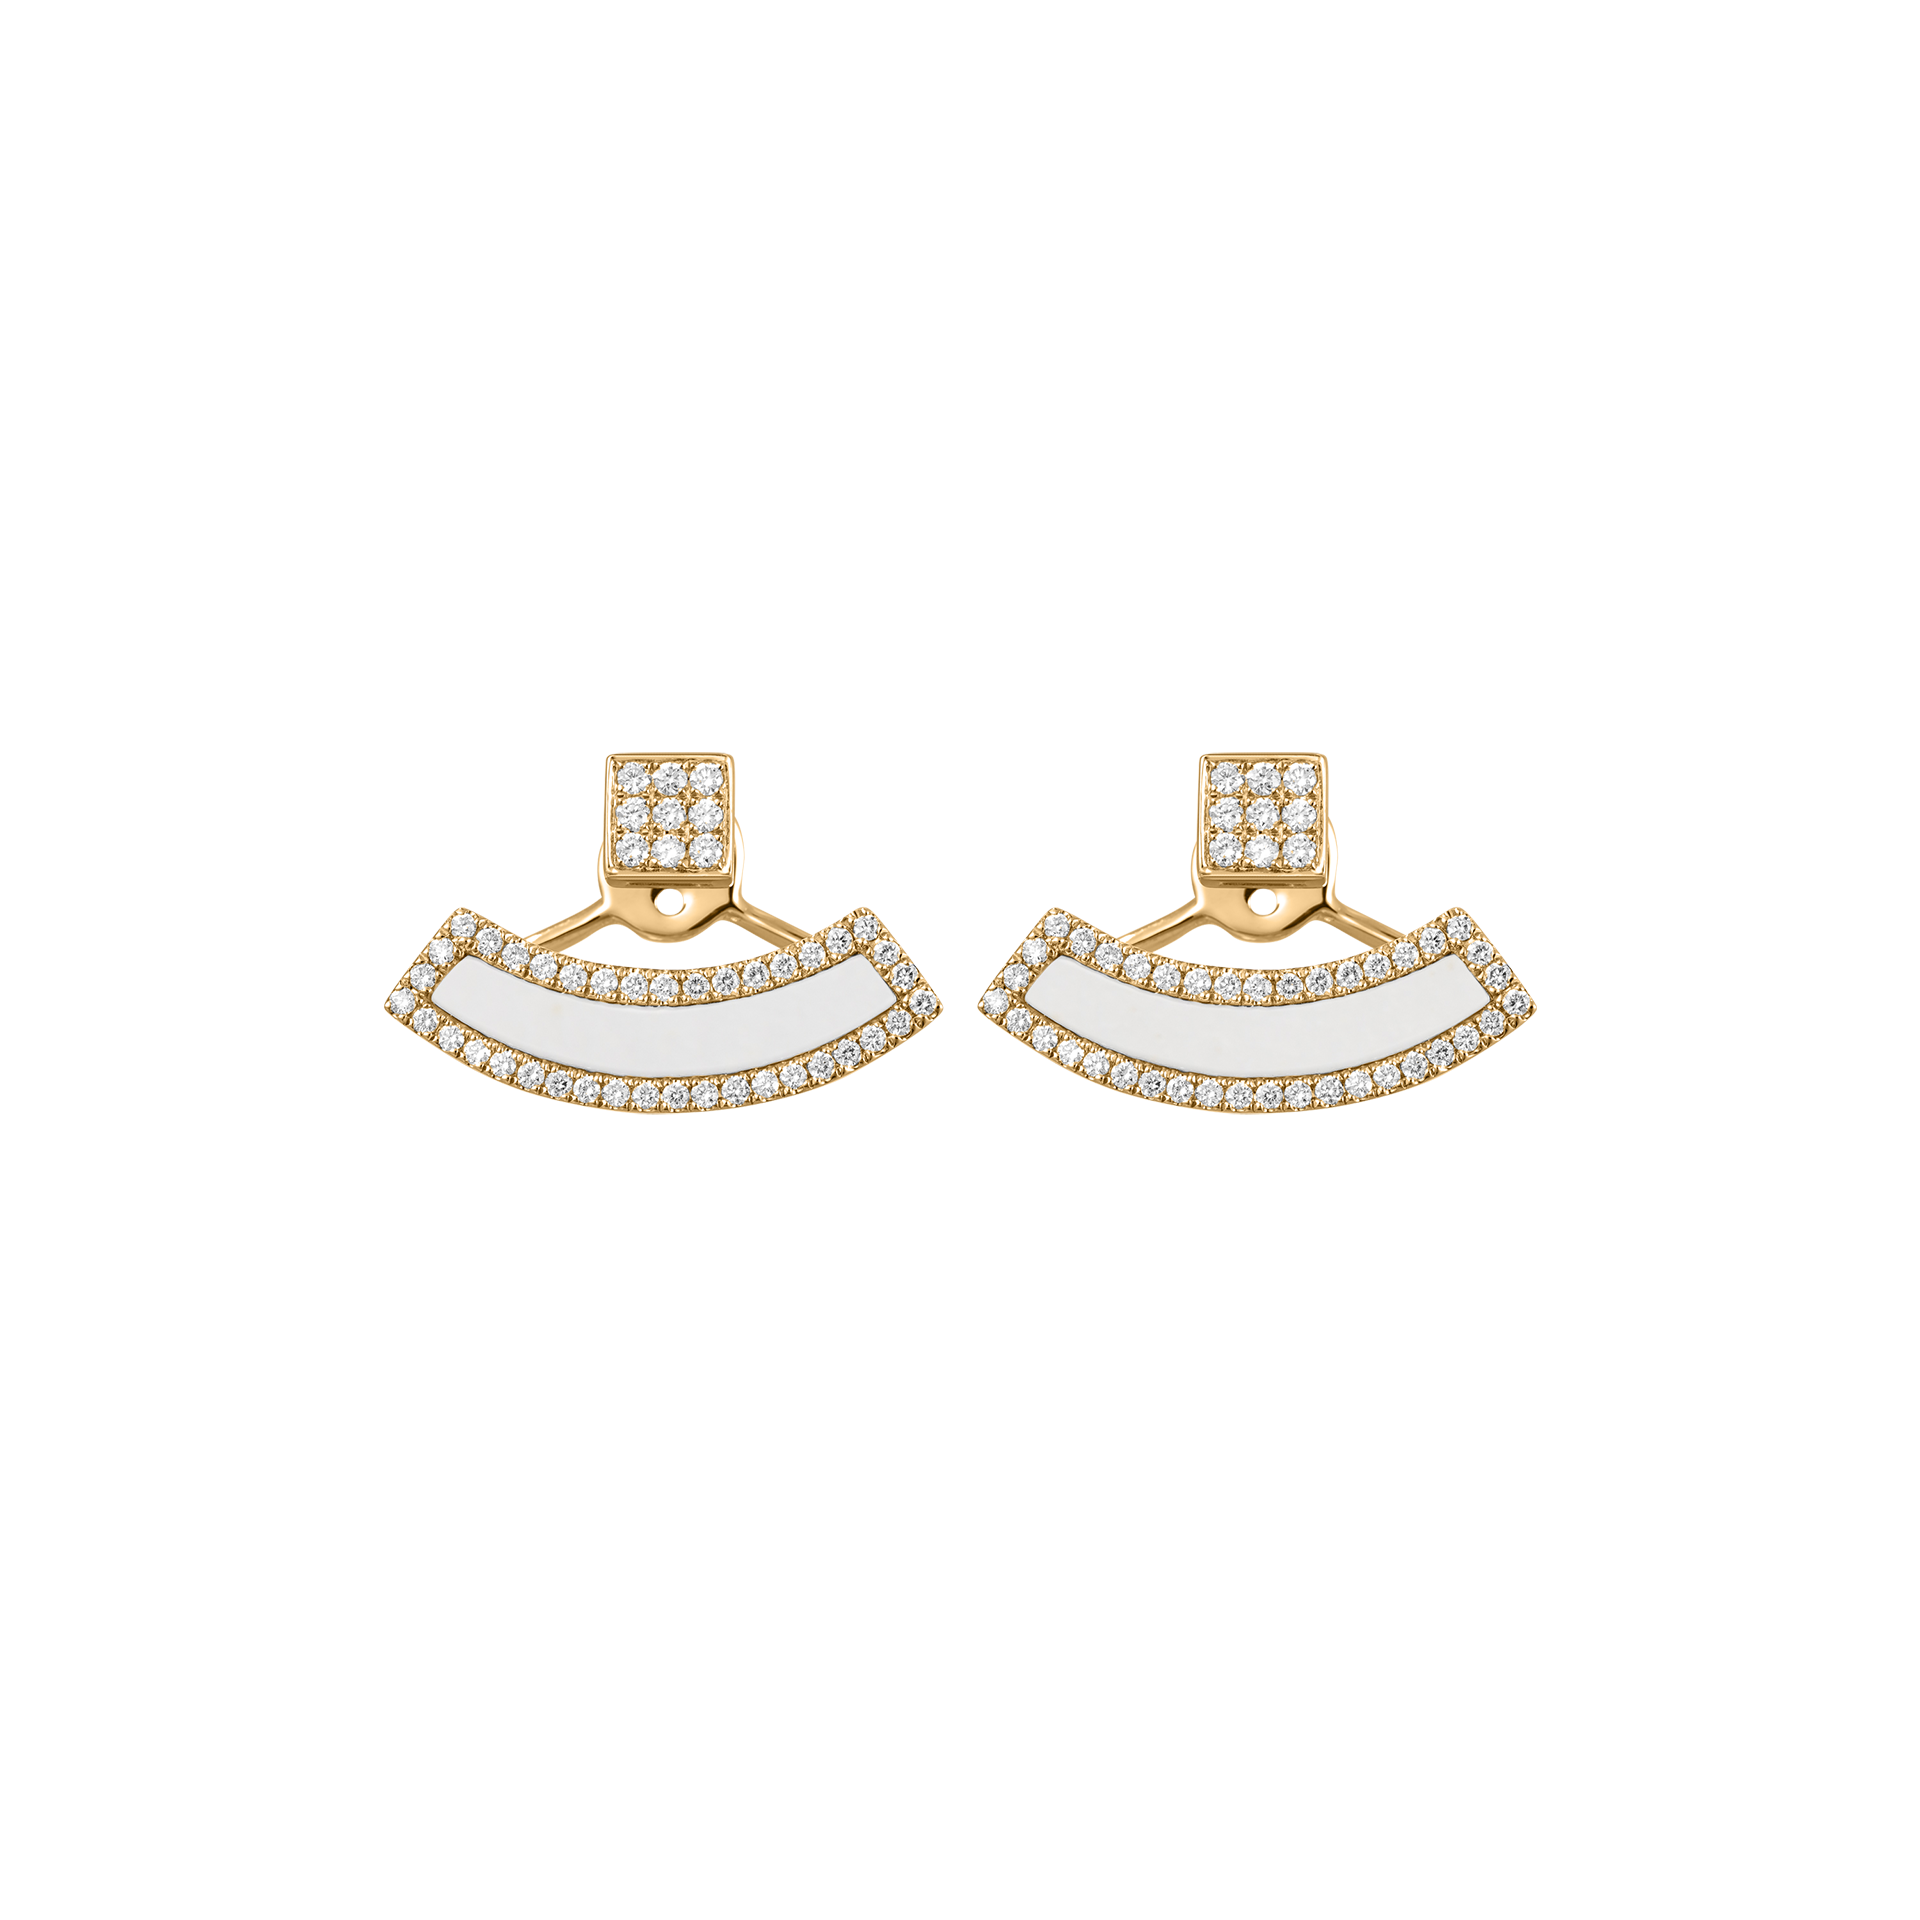 Nova Diamond and White Agate Fan Earrings In 18K Yellow Gold